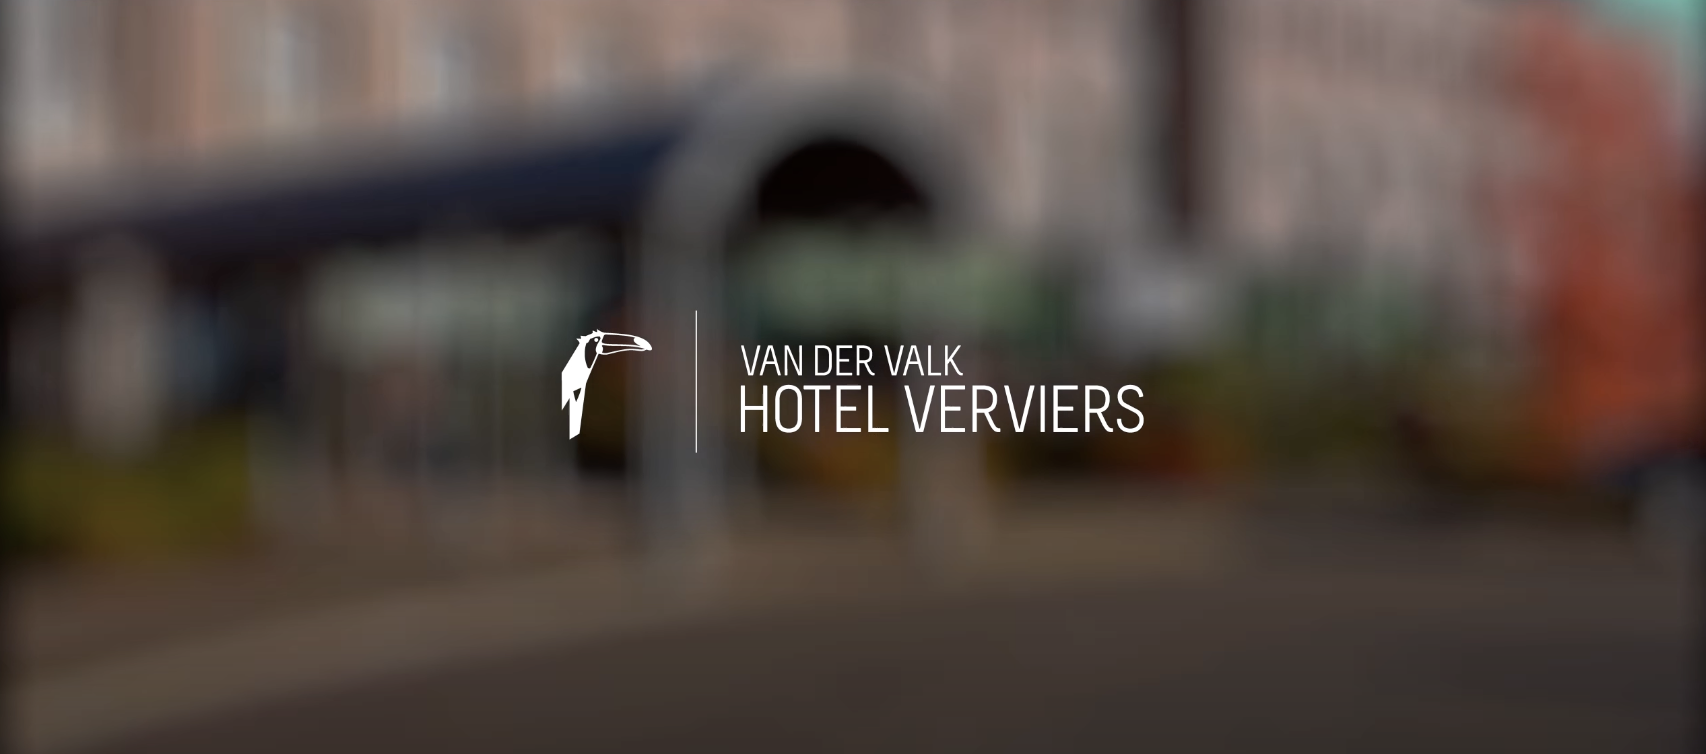 Hôtel Verviers - Van Der Valk